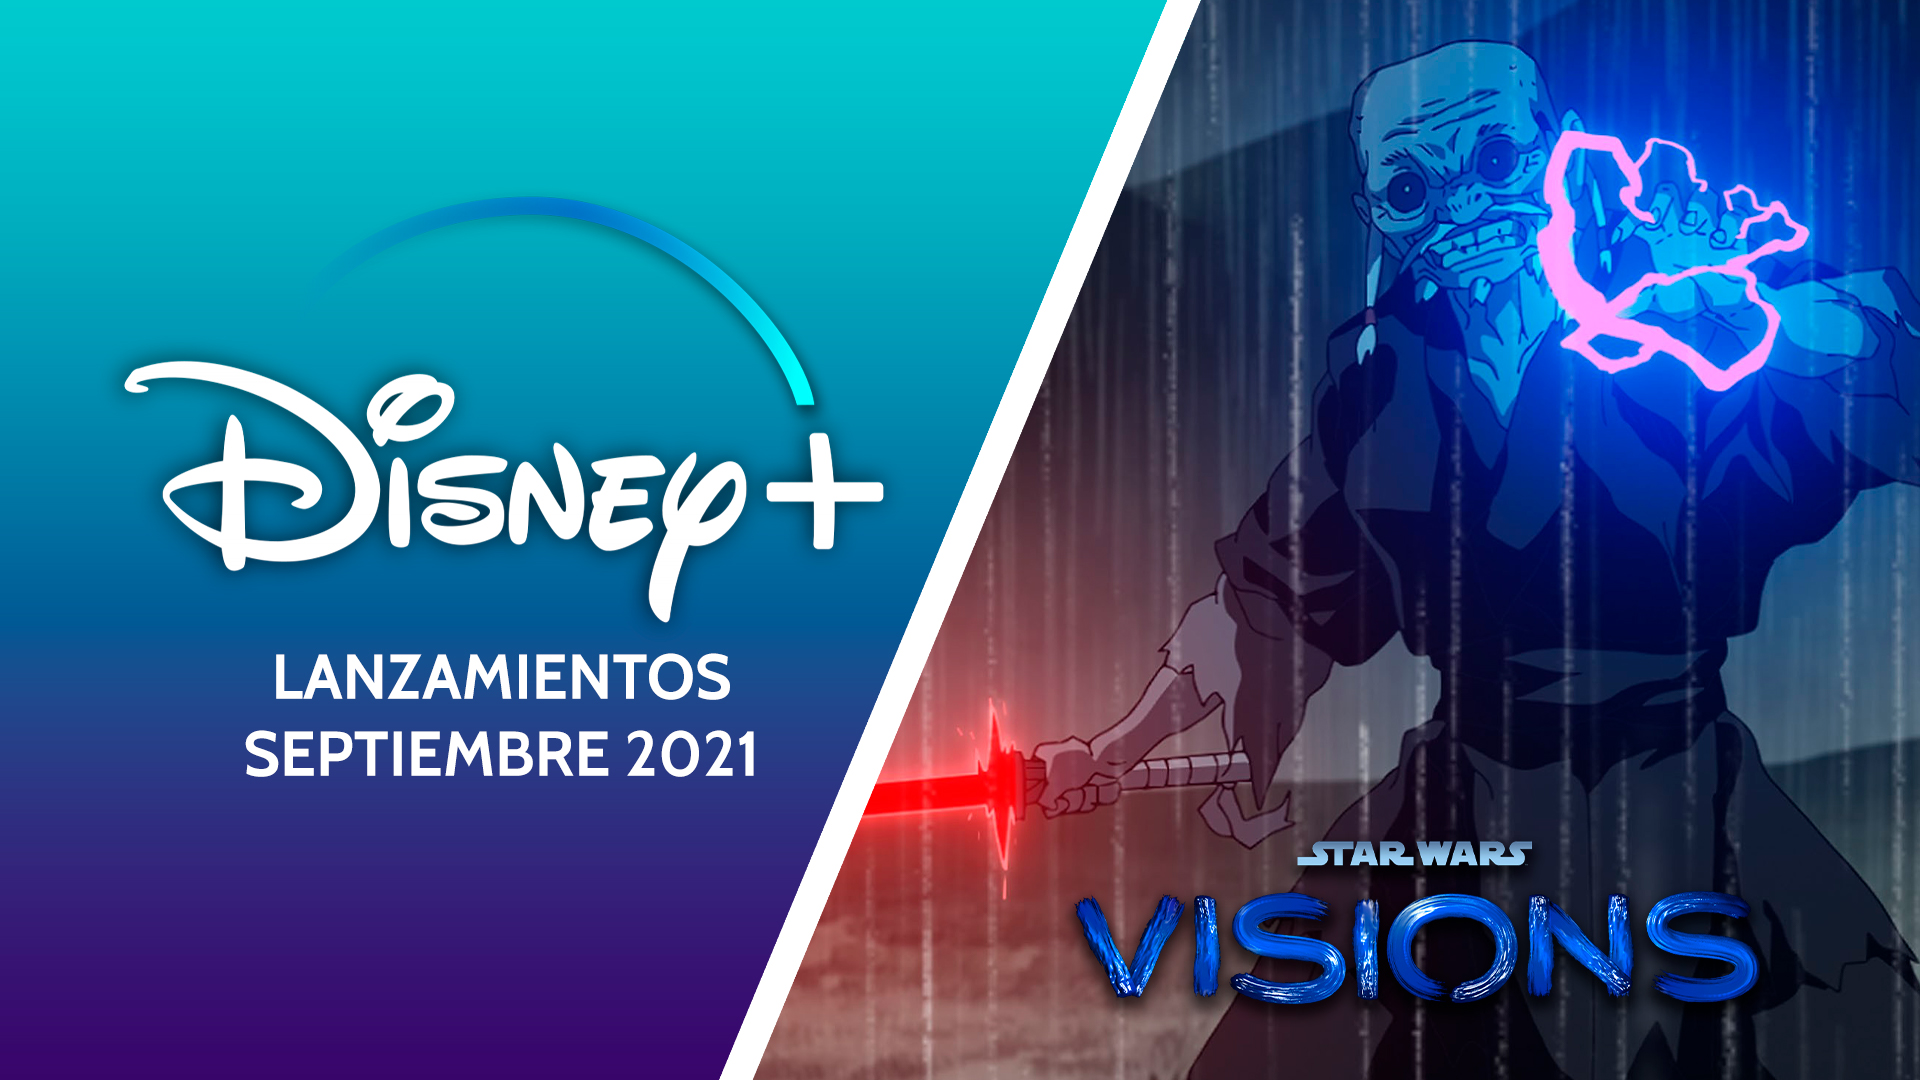 Star Wars Visions para Disney+ en septiembre 2021